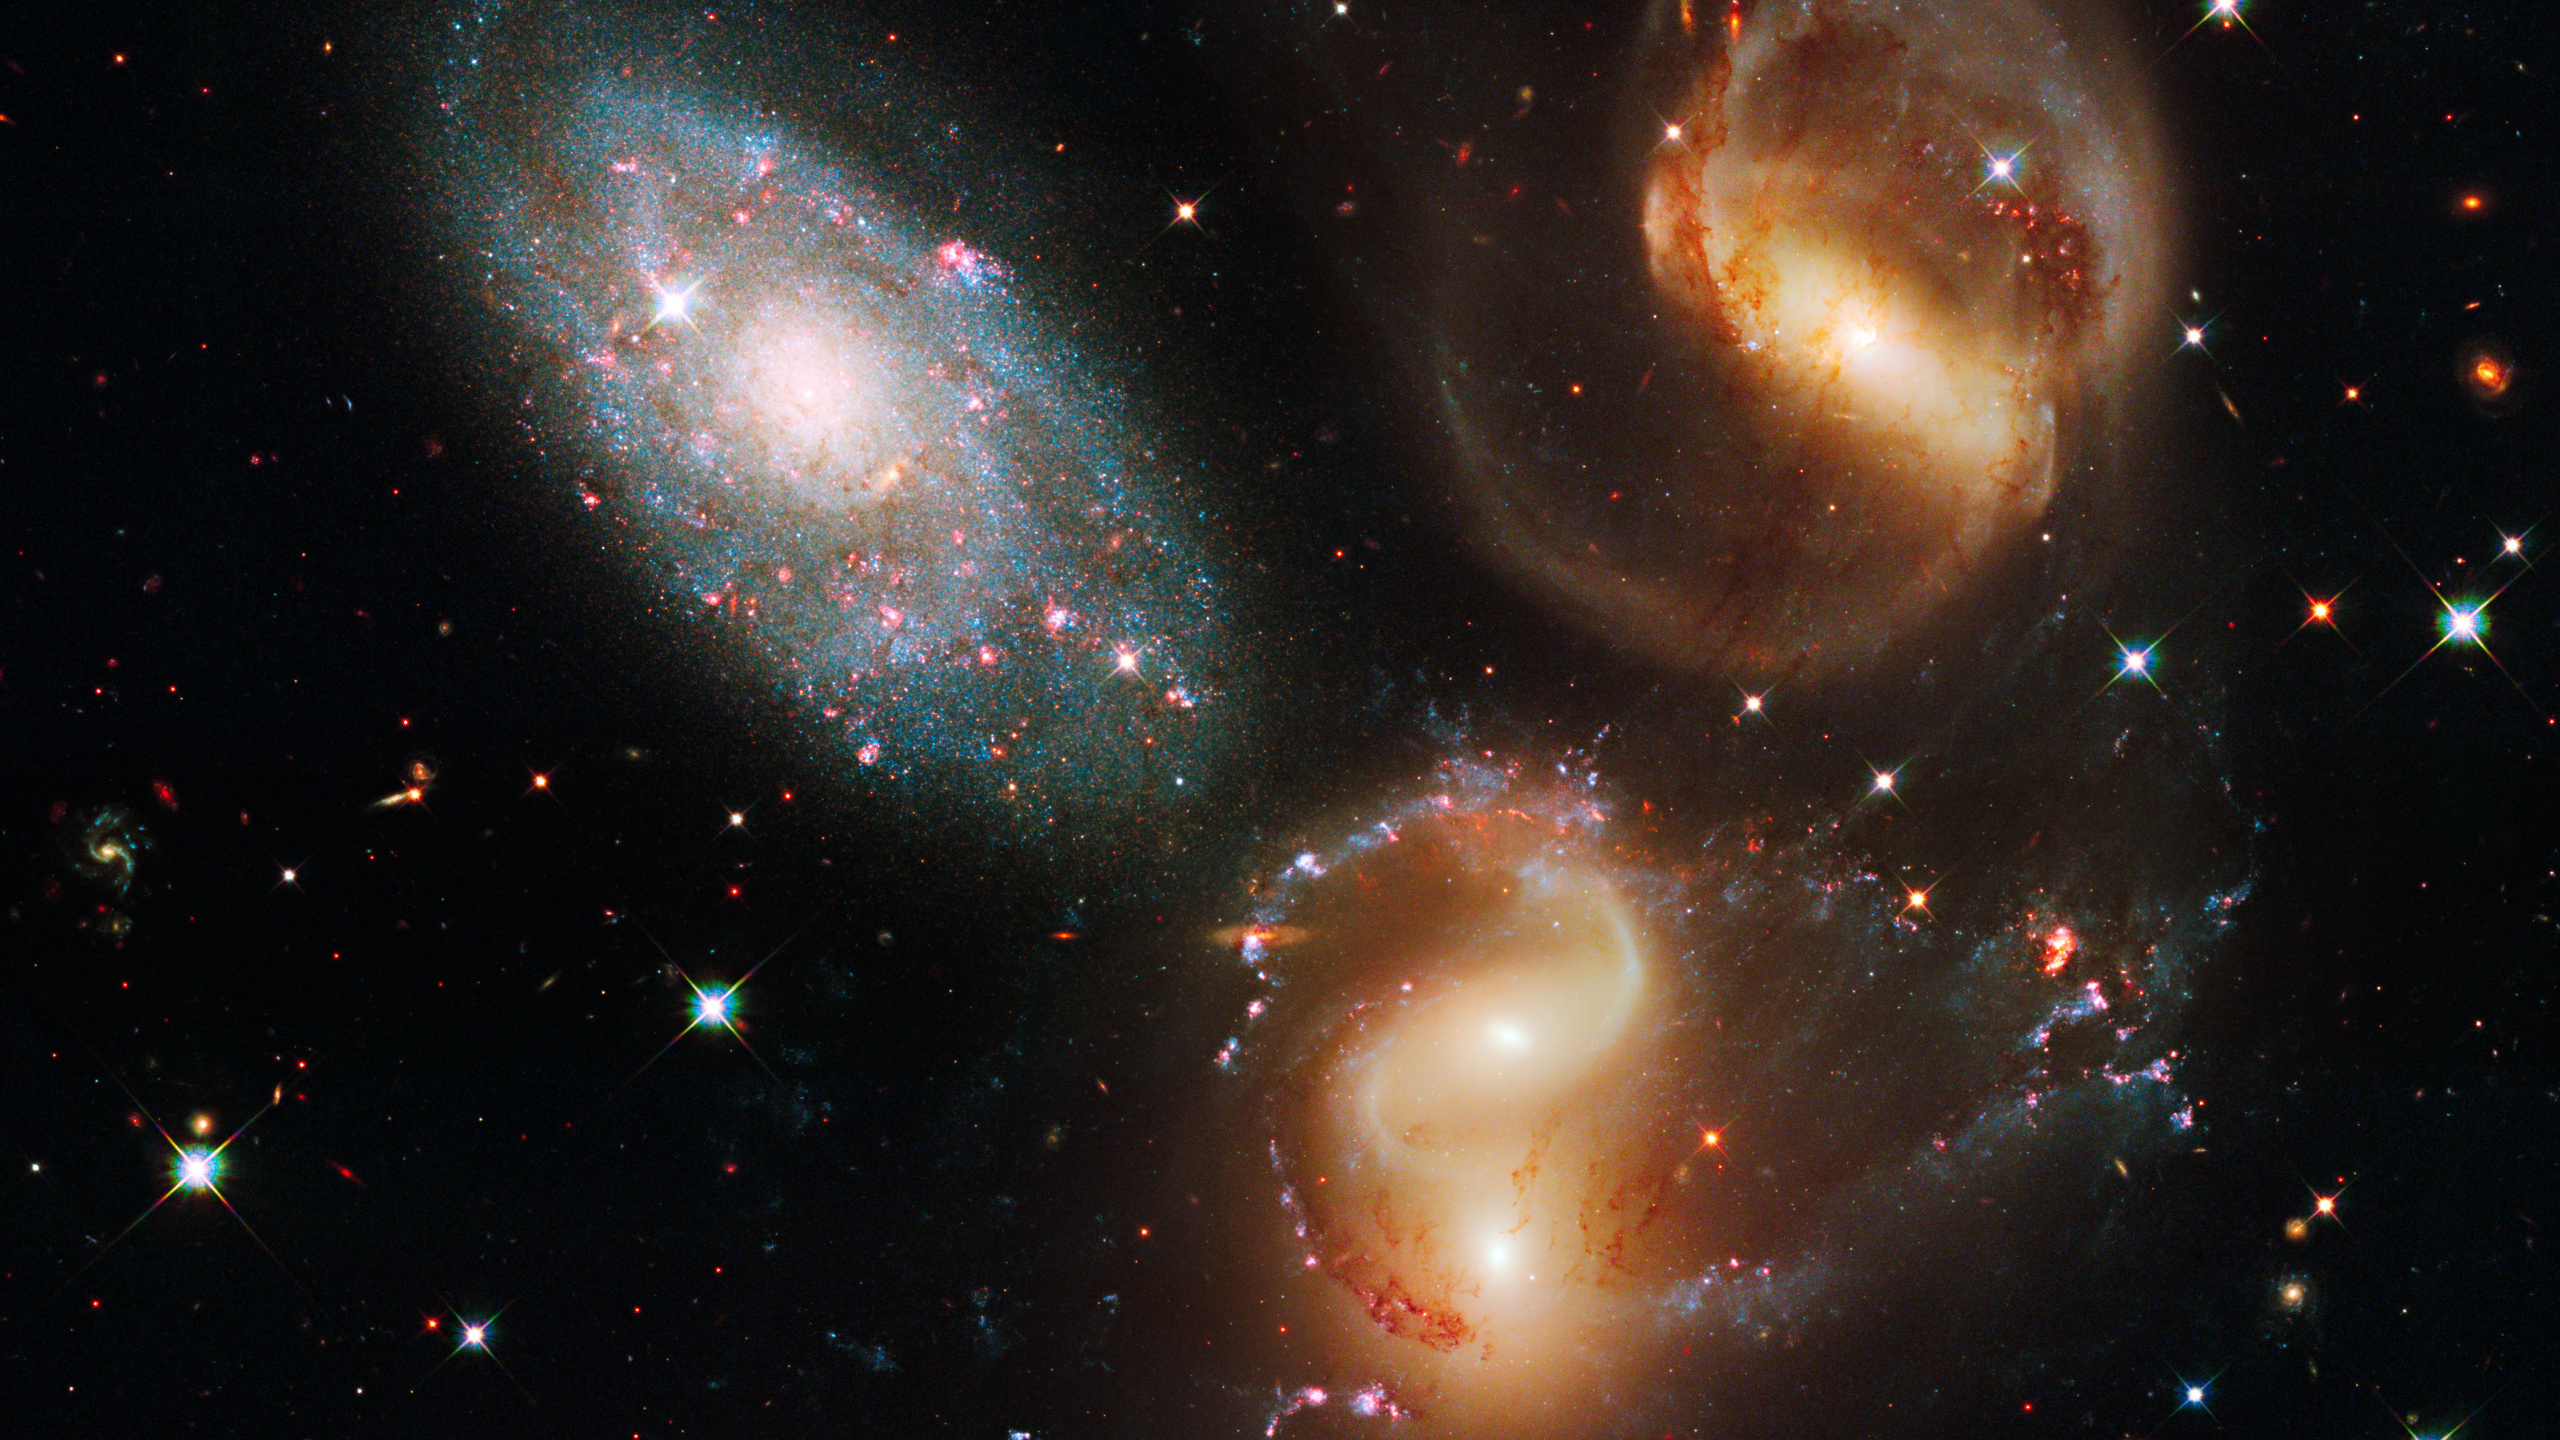 哈勃太空望远镜, 天文学, 外层空间, 天文学对象, 宇宙 壁纸 2560x1440 允许